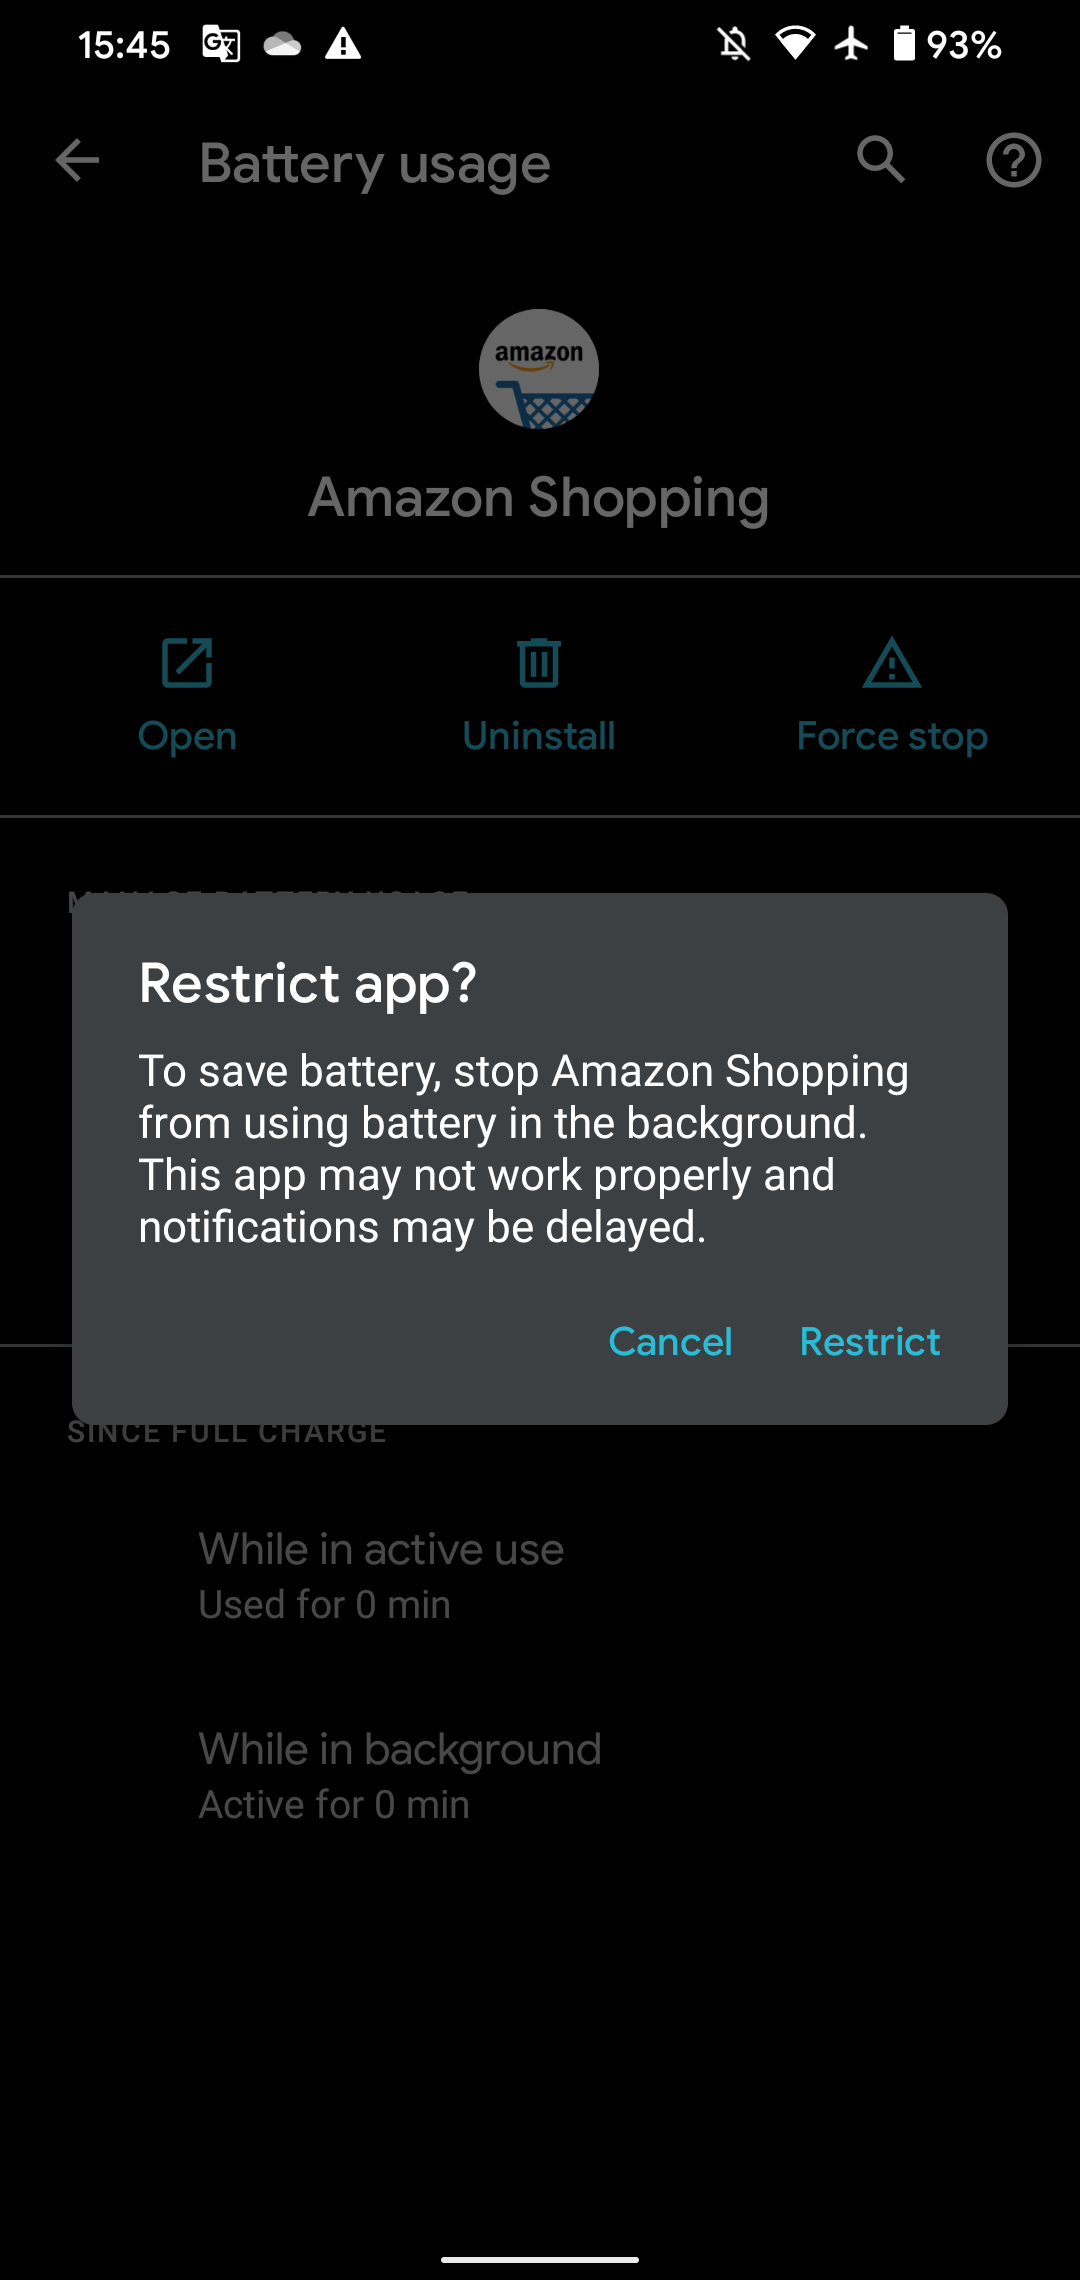 Android confirma aplicativo de restrição de bateria